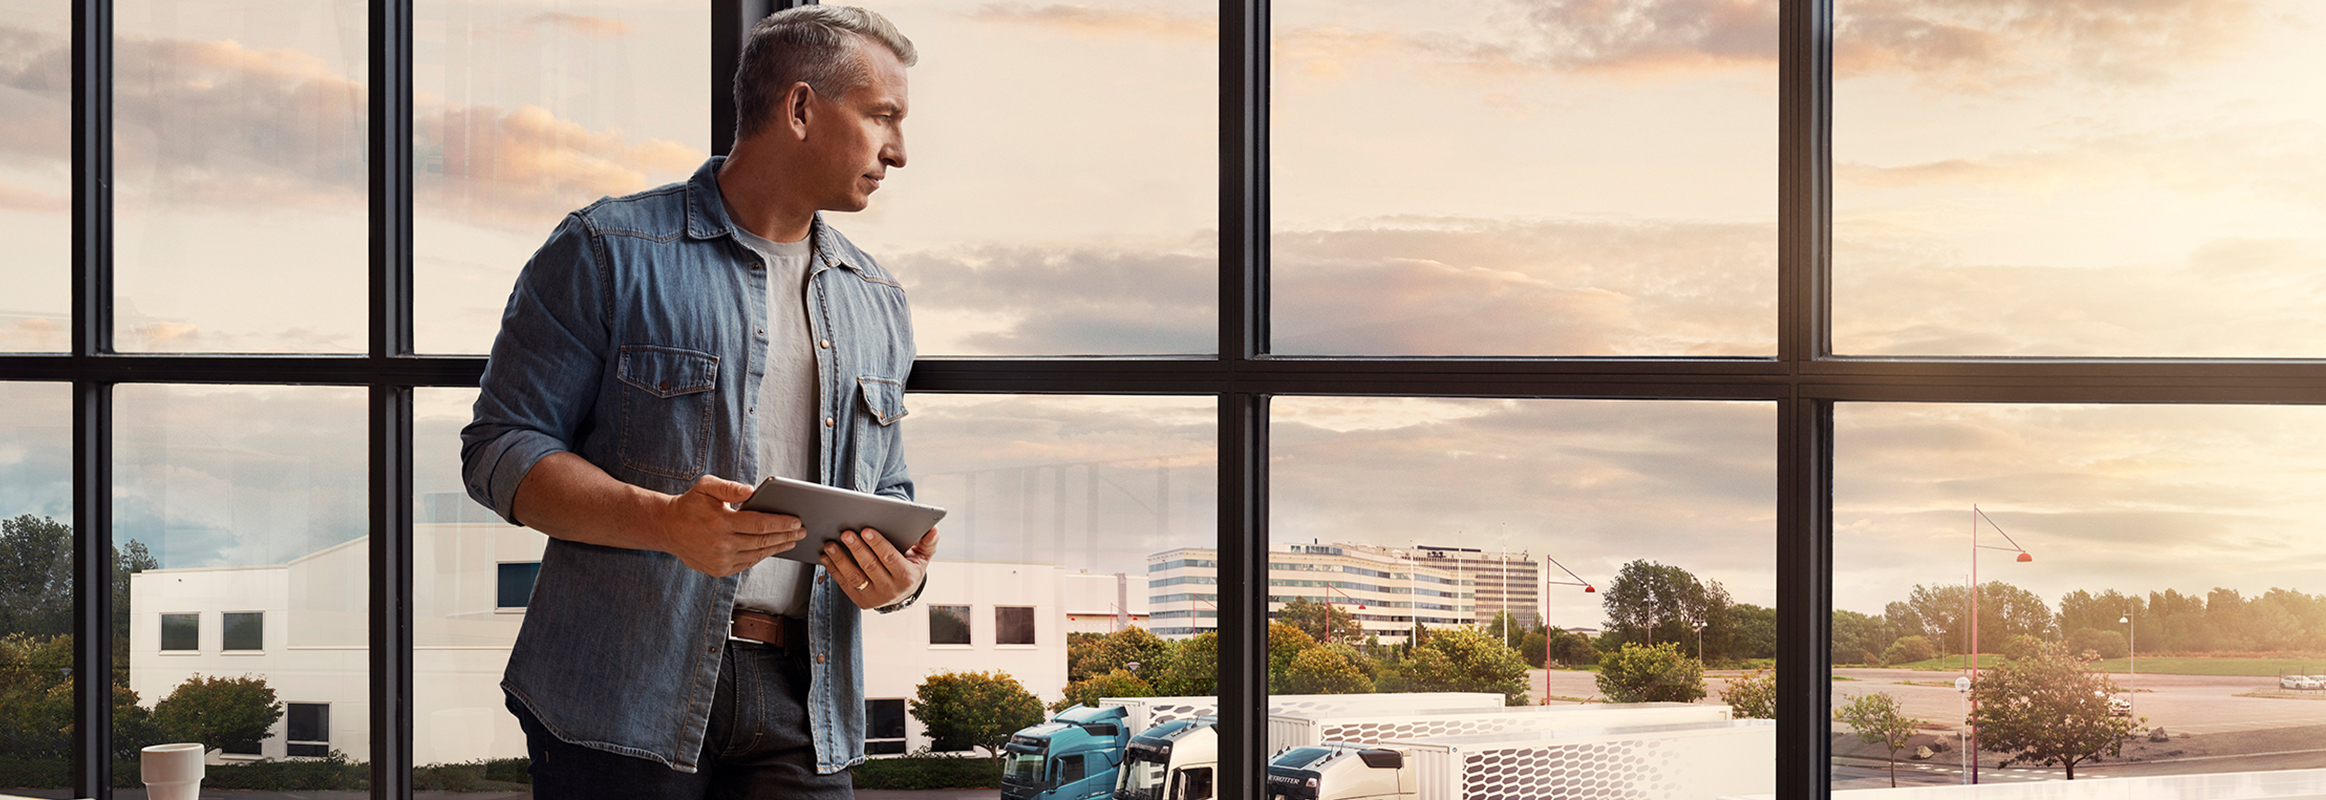 Egy táblagépet tartó férfi áll az ablaknál, miközben lenéz a saját teherautó-flottájára